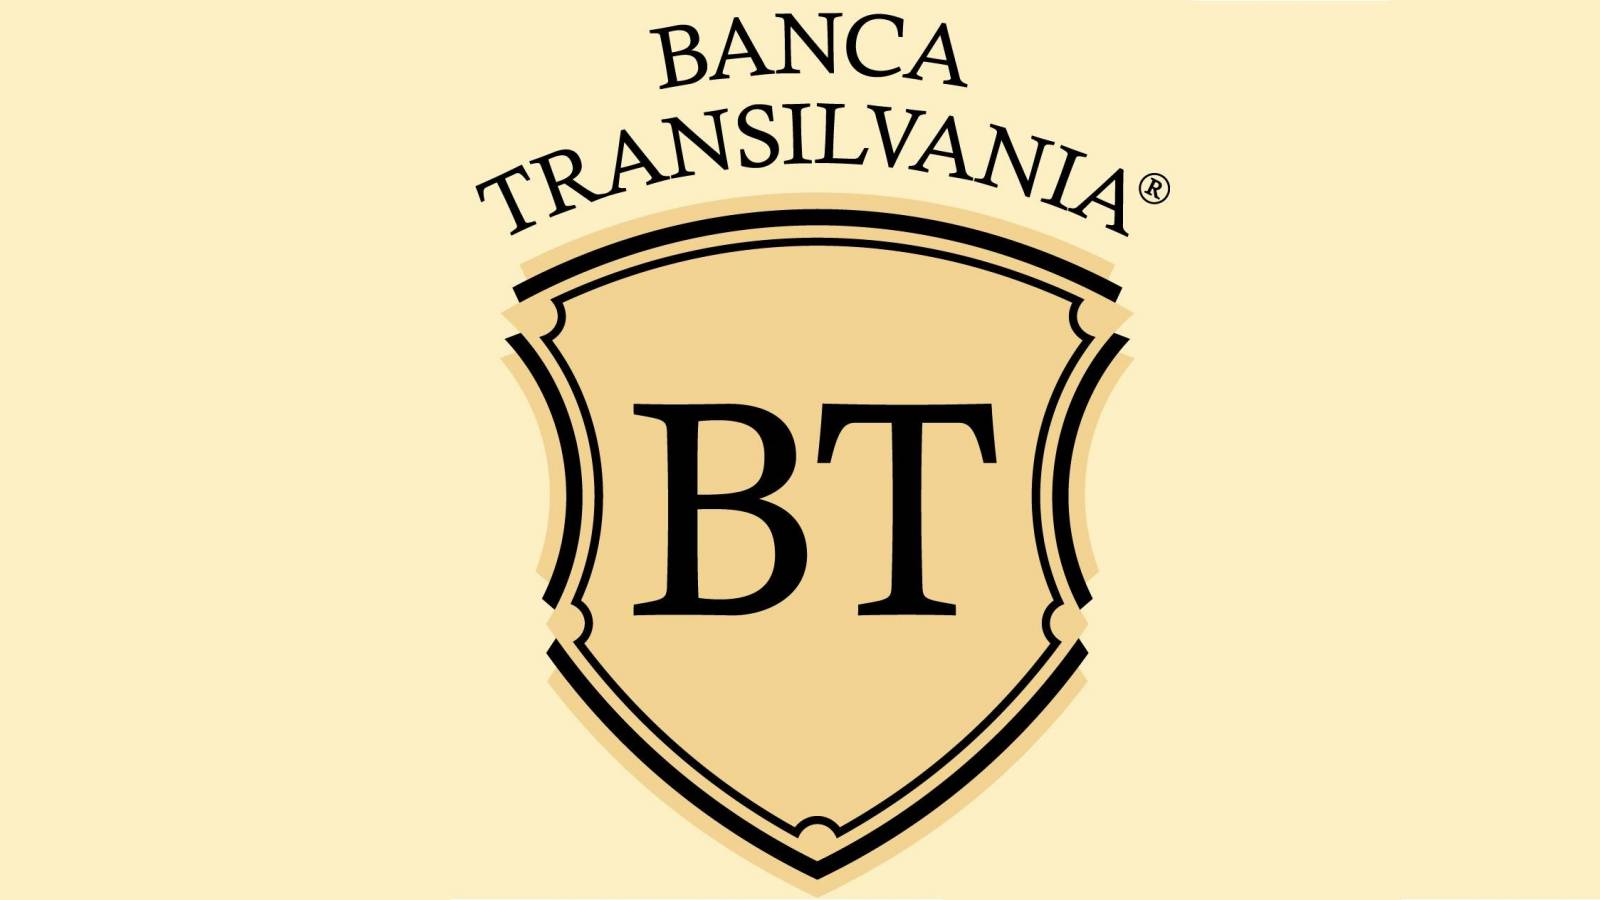 BANCA Transilvania gibt allen rumänischen Kunden eine äußerst wichtige Warnung heraus